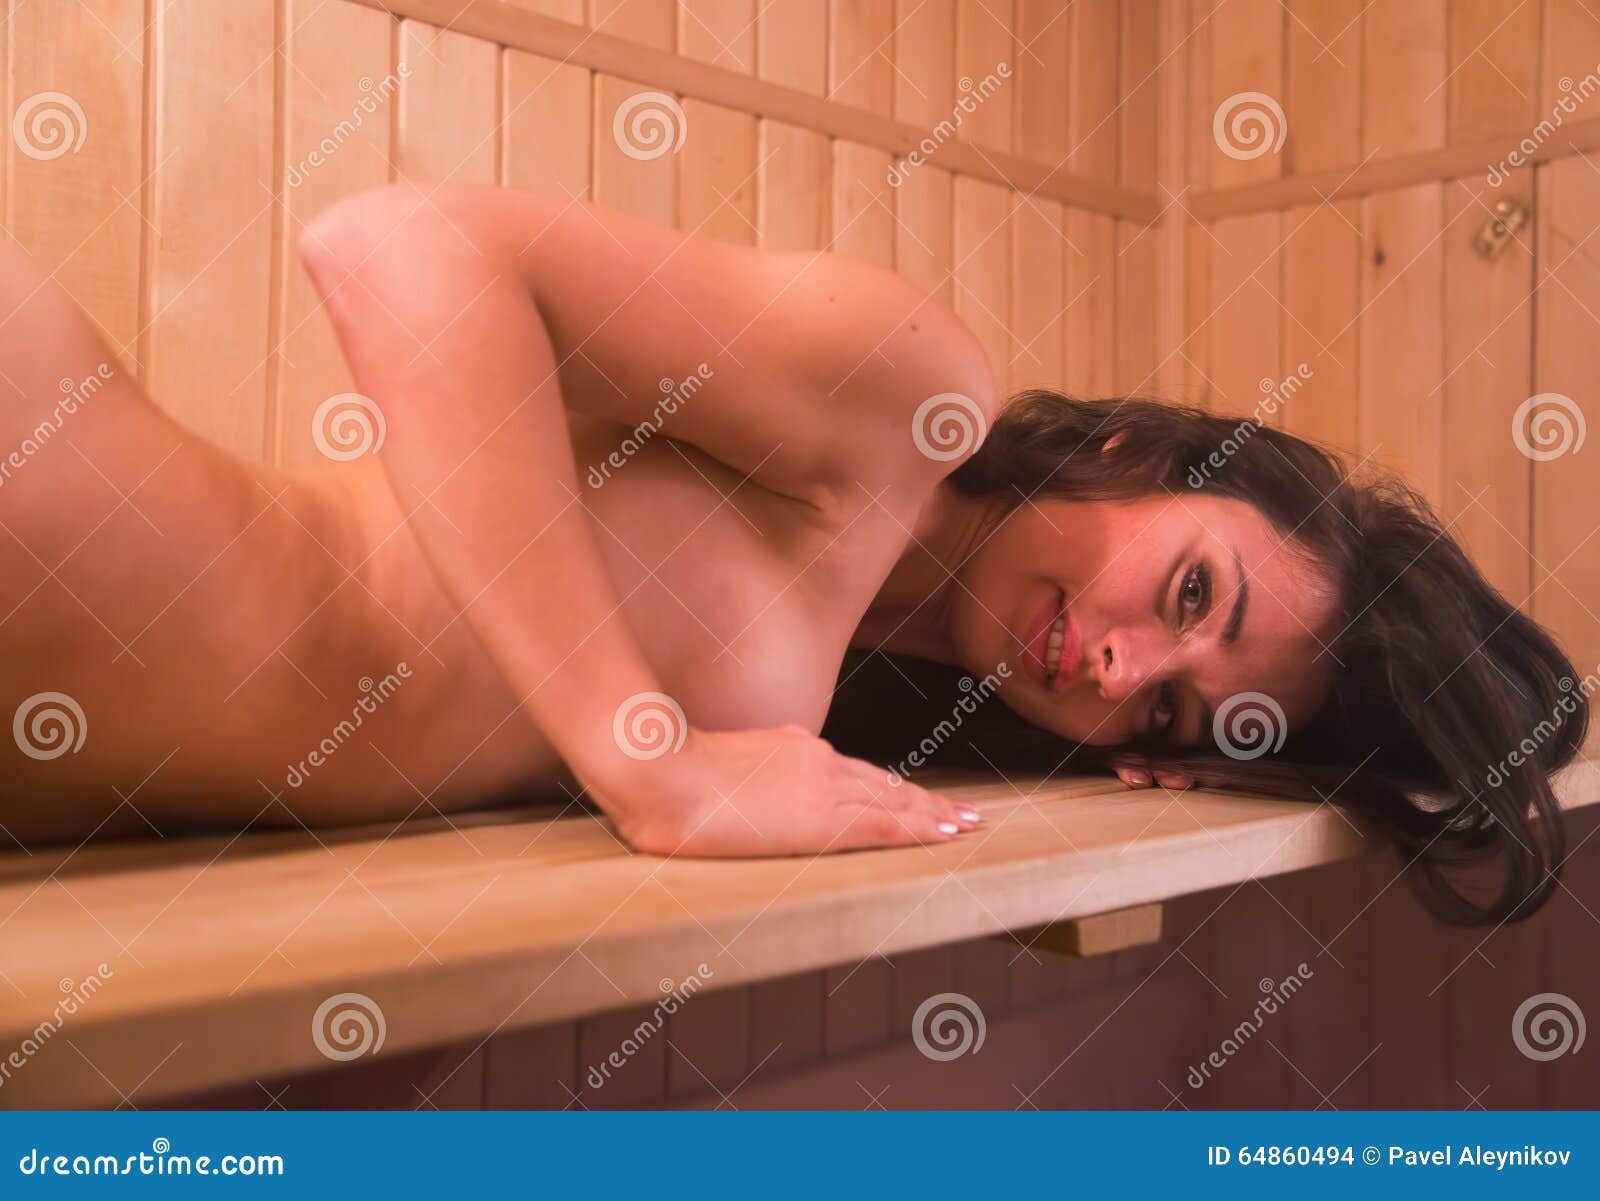 Nackt sauna der frauen in Geschichte: Nackt